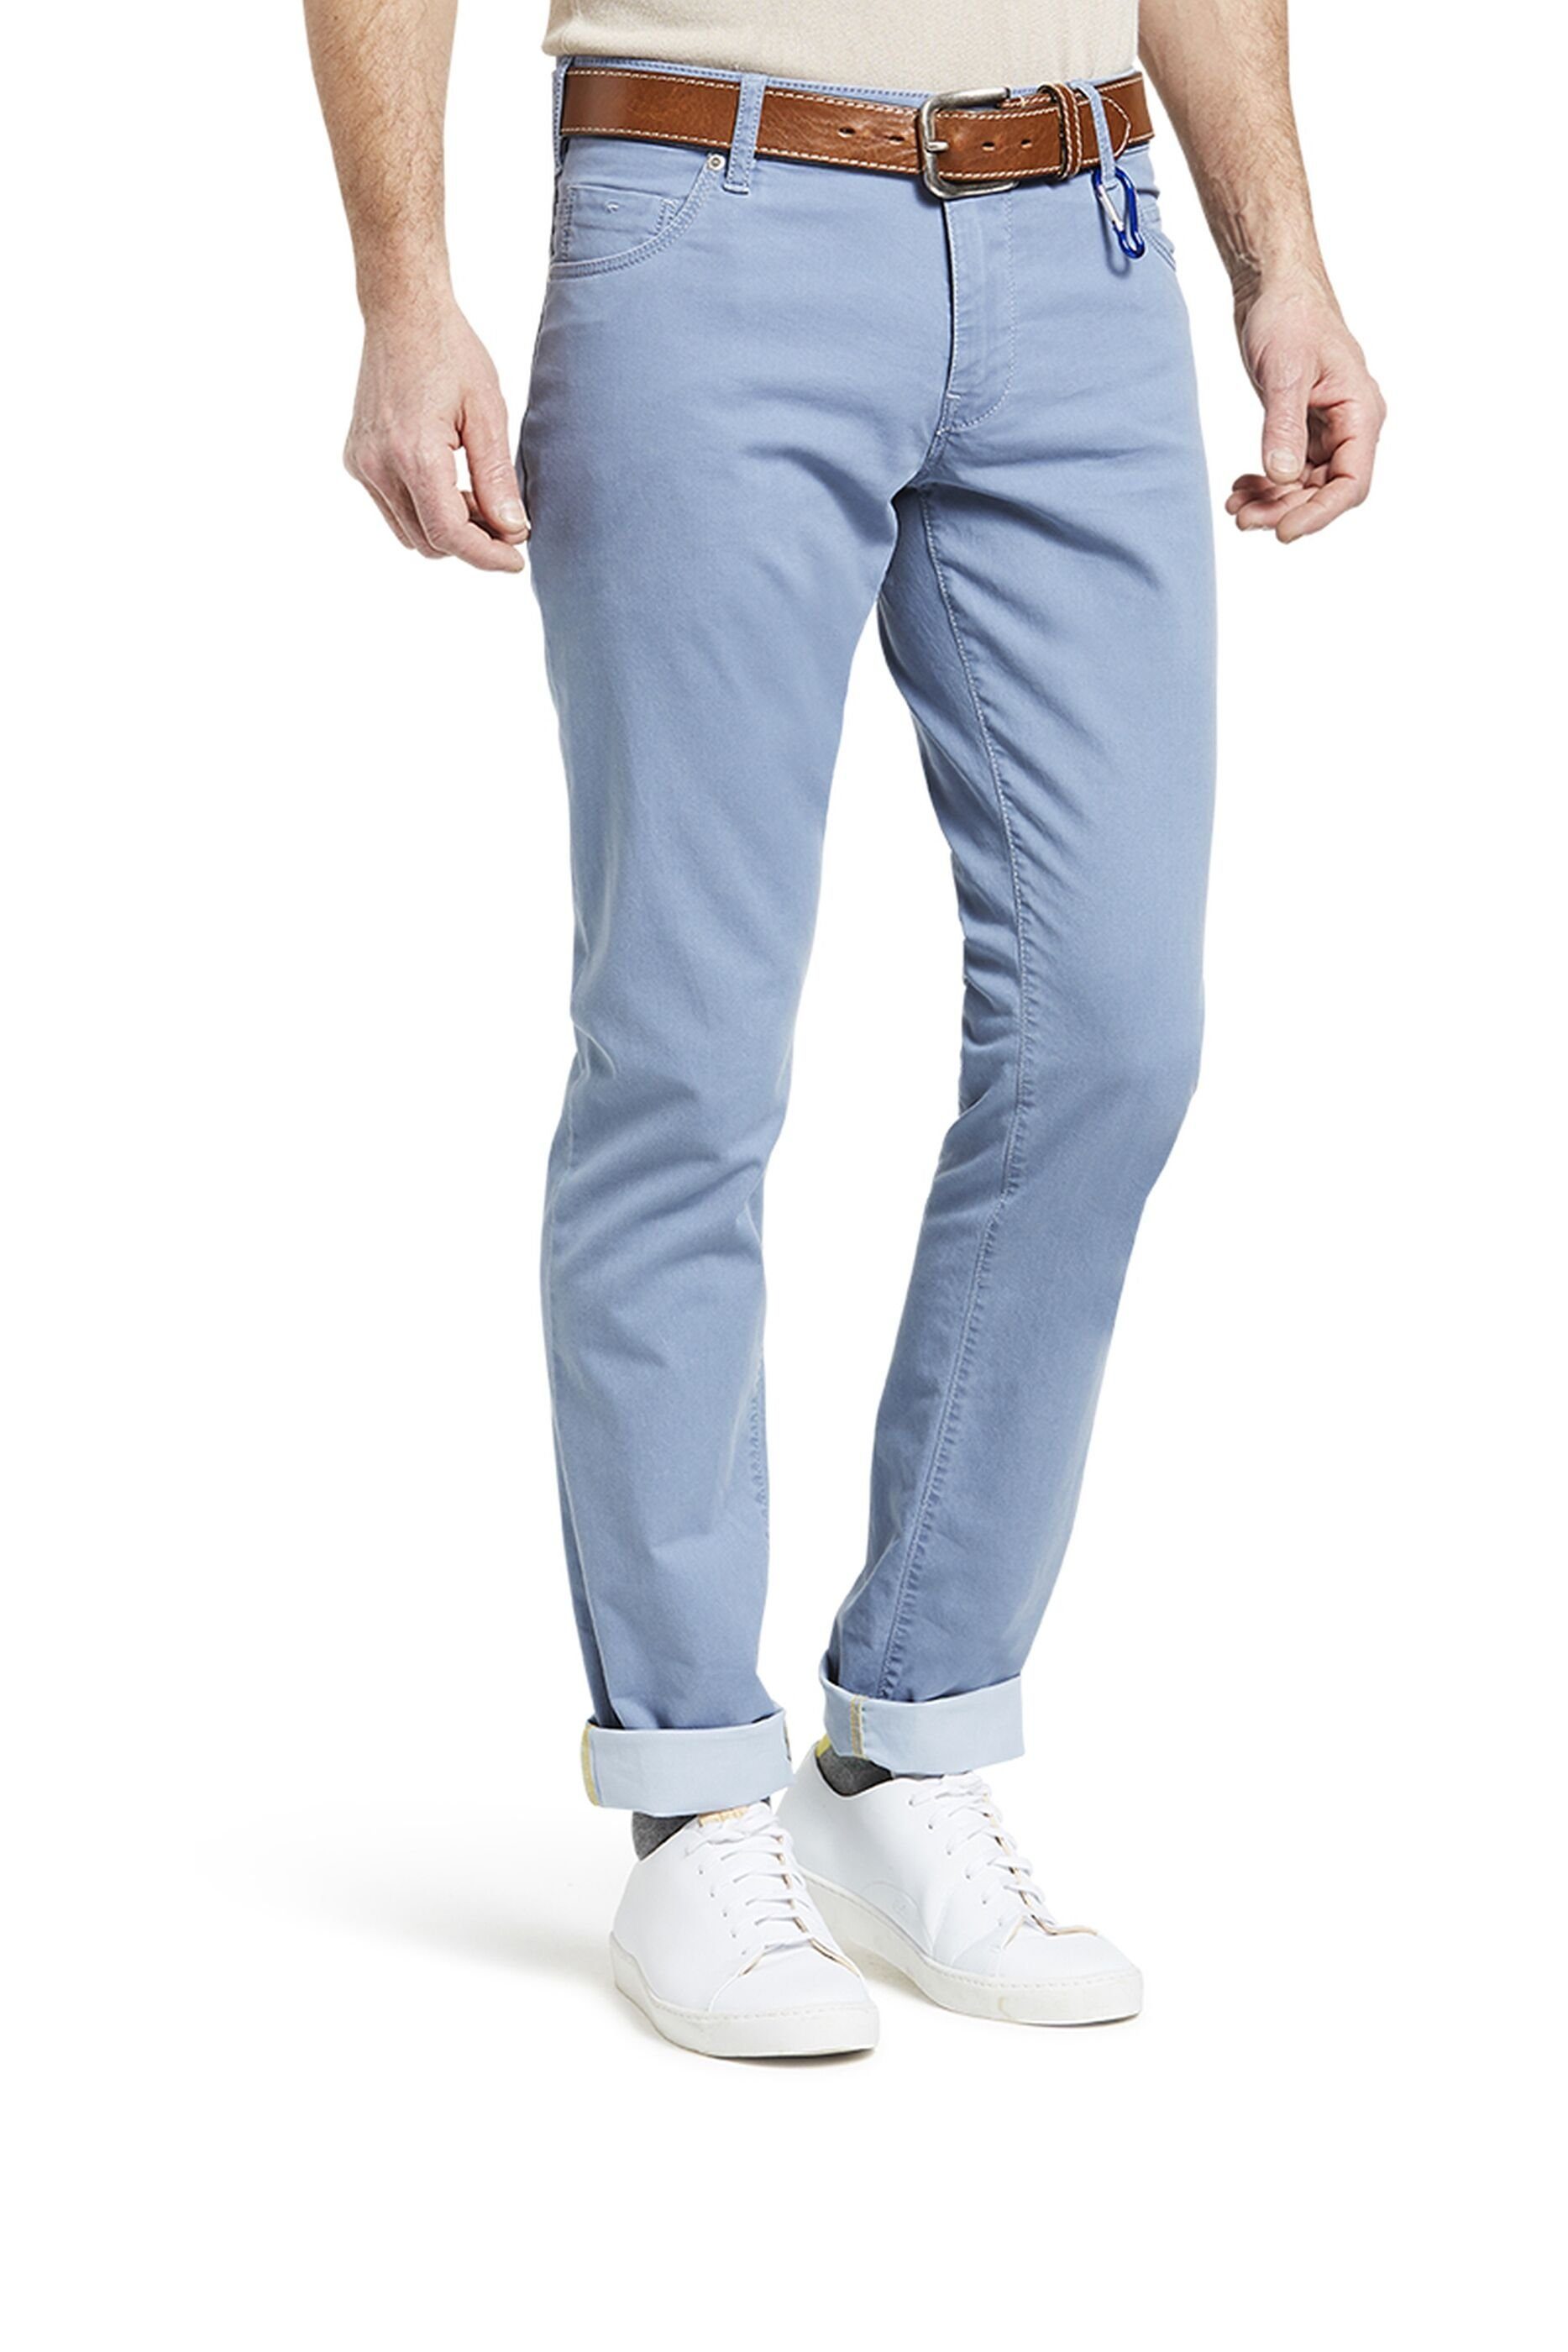 MEYER Slim-fit-Jeans 'M5' aus europäischer Produktion blau